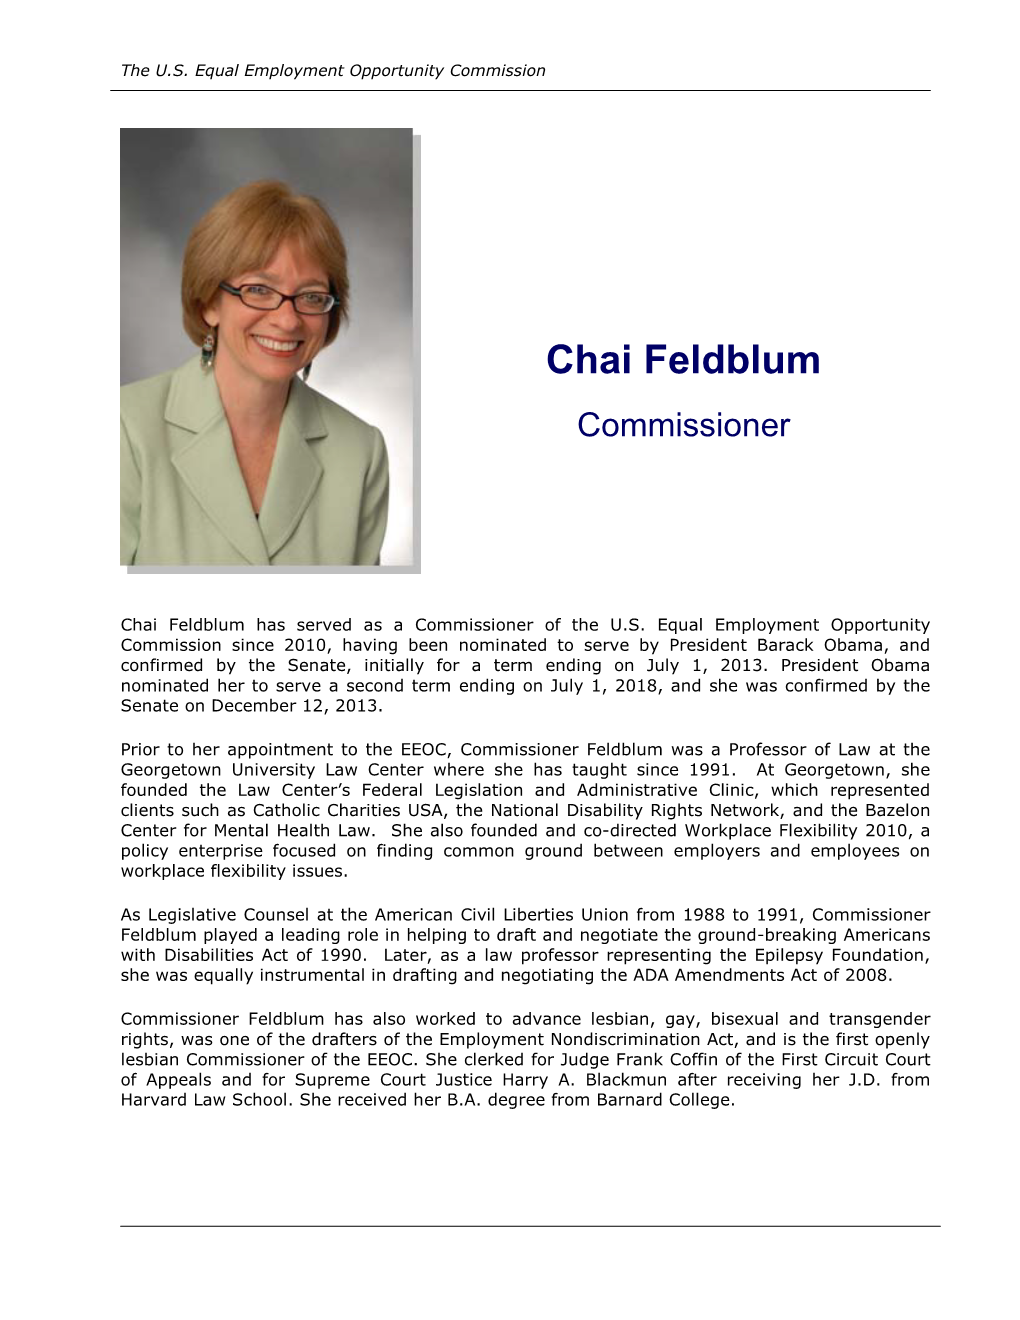 Chai Feldblum Commissioner